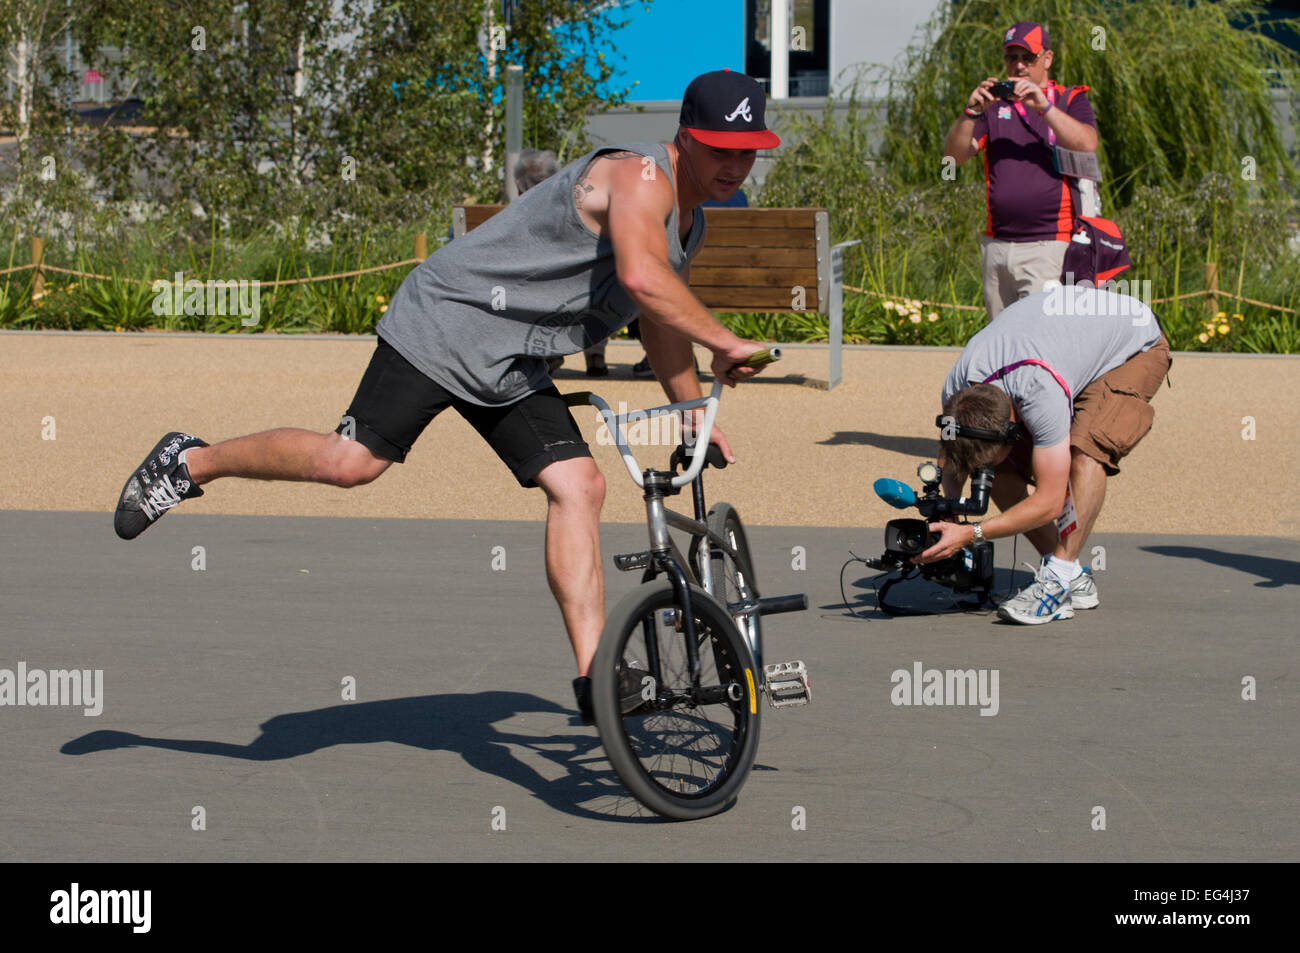 Rider BMX aux Jeux olympiques 2012, Londres, Angleterre Banque D'Images